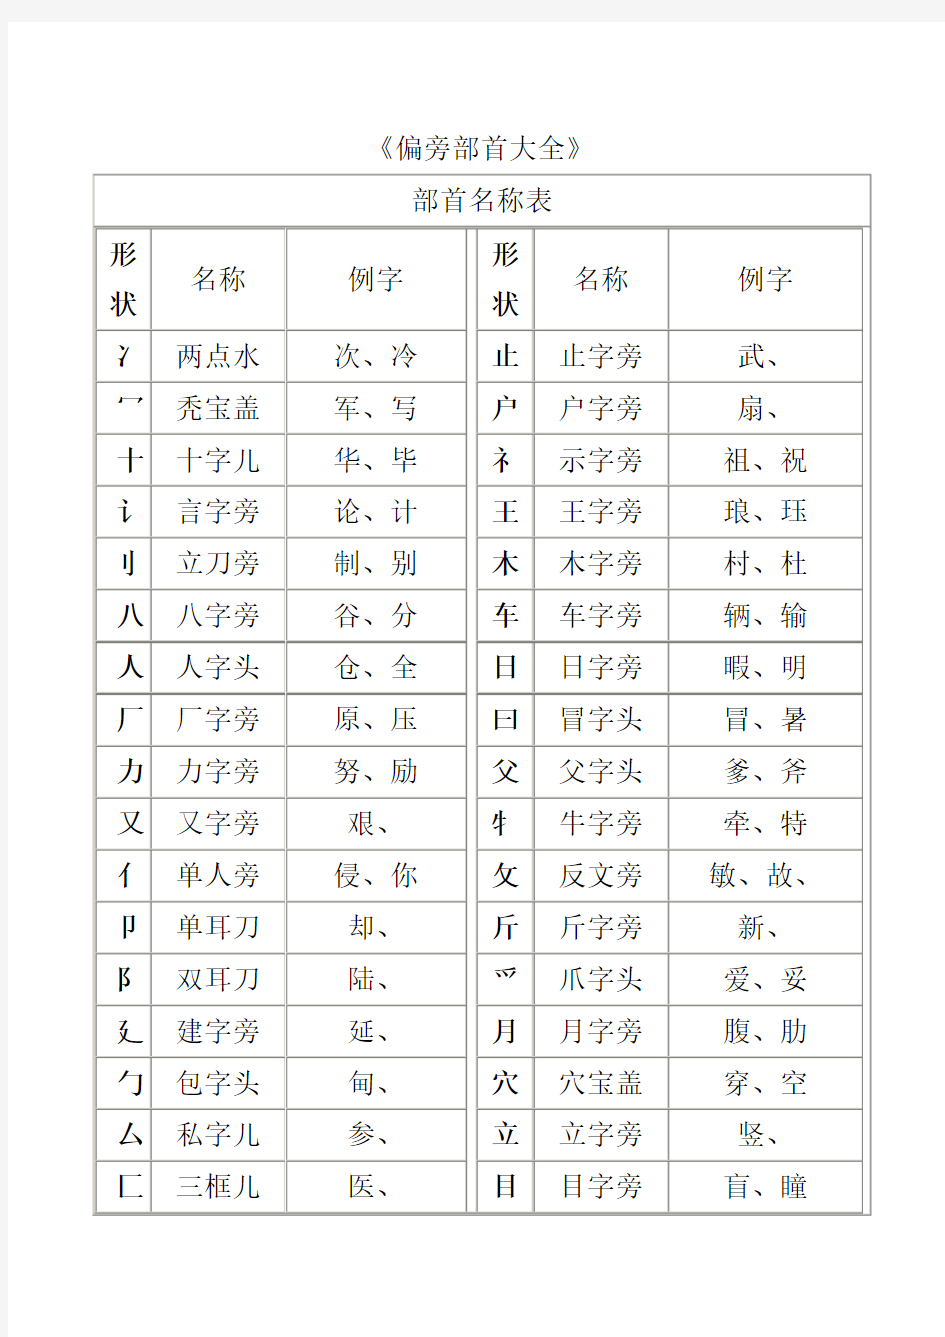 汉字笔画名称、偏旁部首大全表